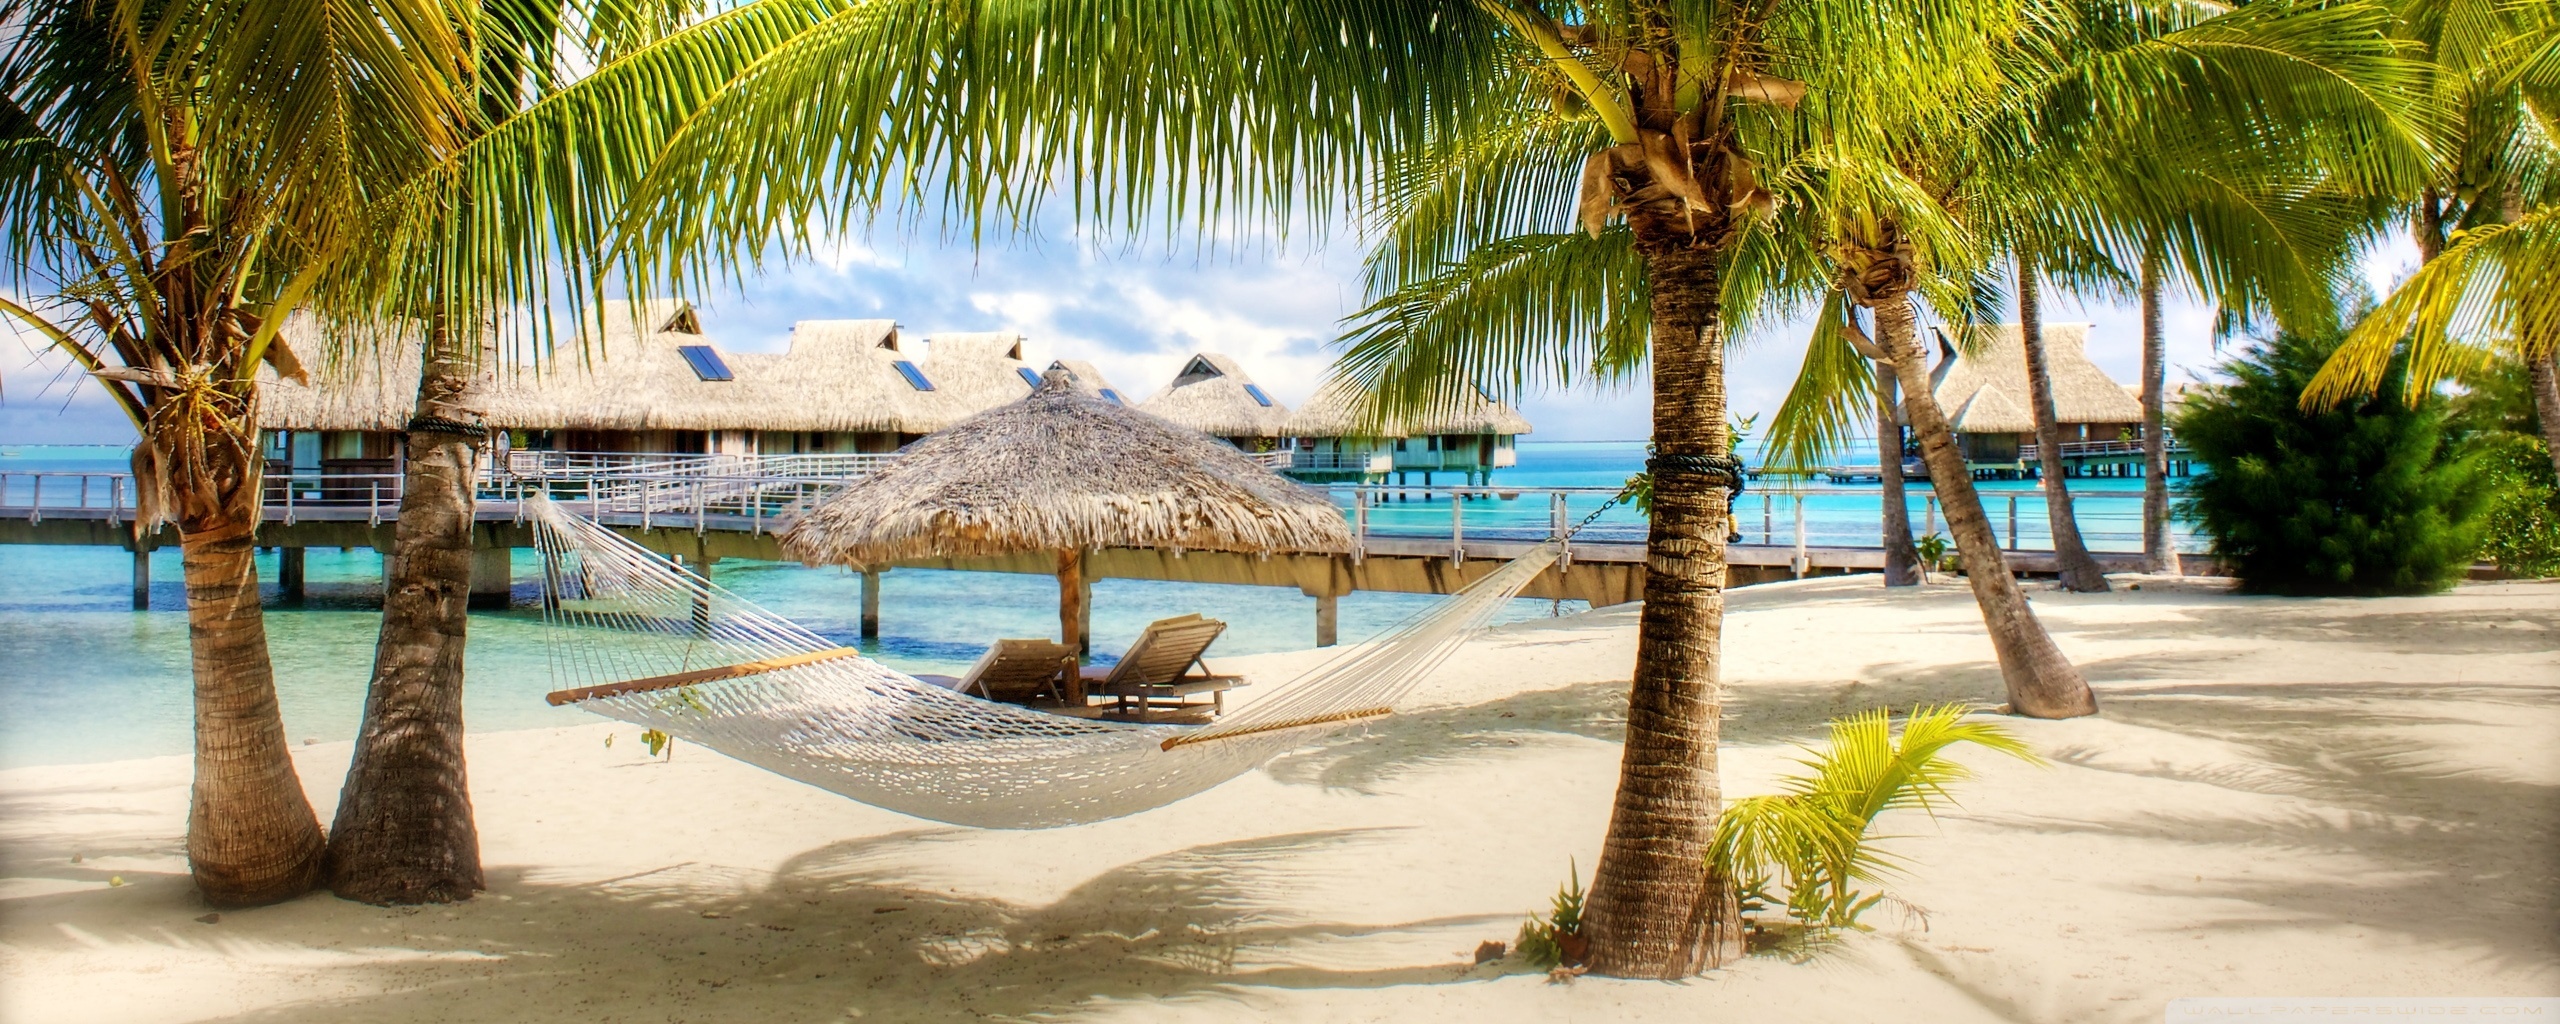 Tropical Beach Resort HD desktop wallpaper High Definition